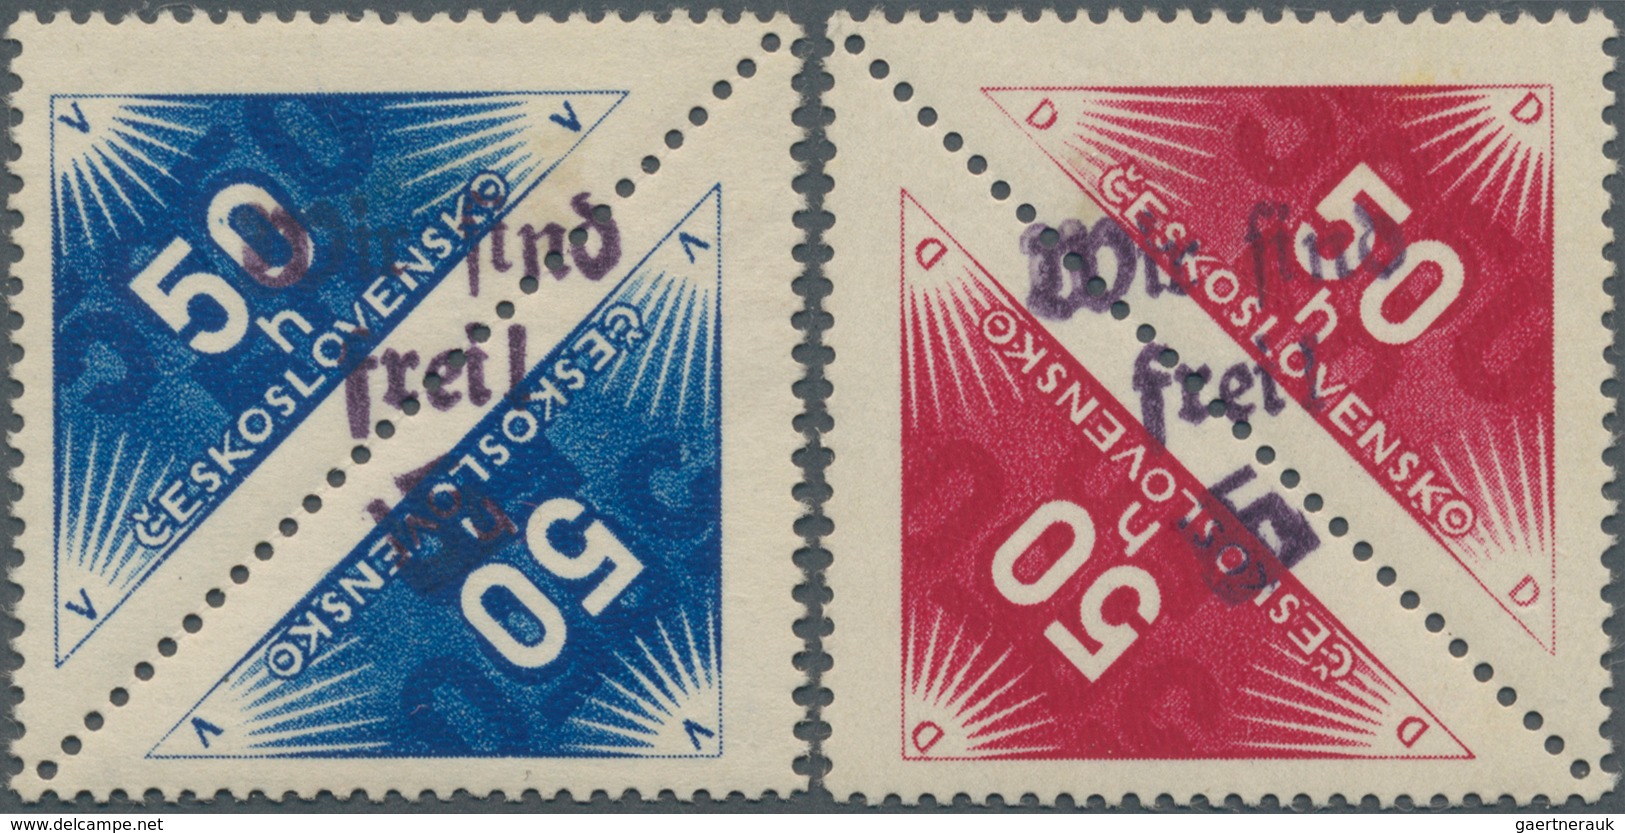 00159 Sudetenland - Reichenberg: Zeitungsmarken 50 H Schwärzlichultramarin Und 50 H Magenta, Mischzähnung - Sudetenland